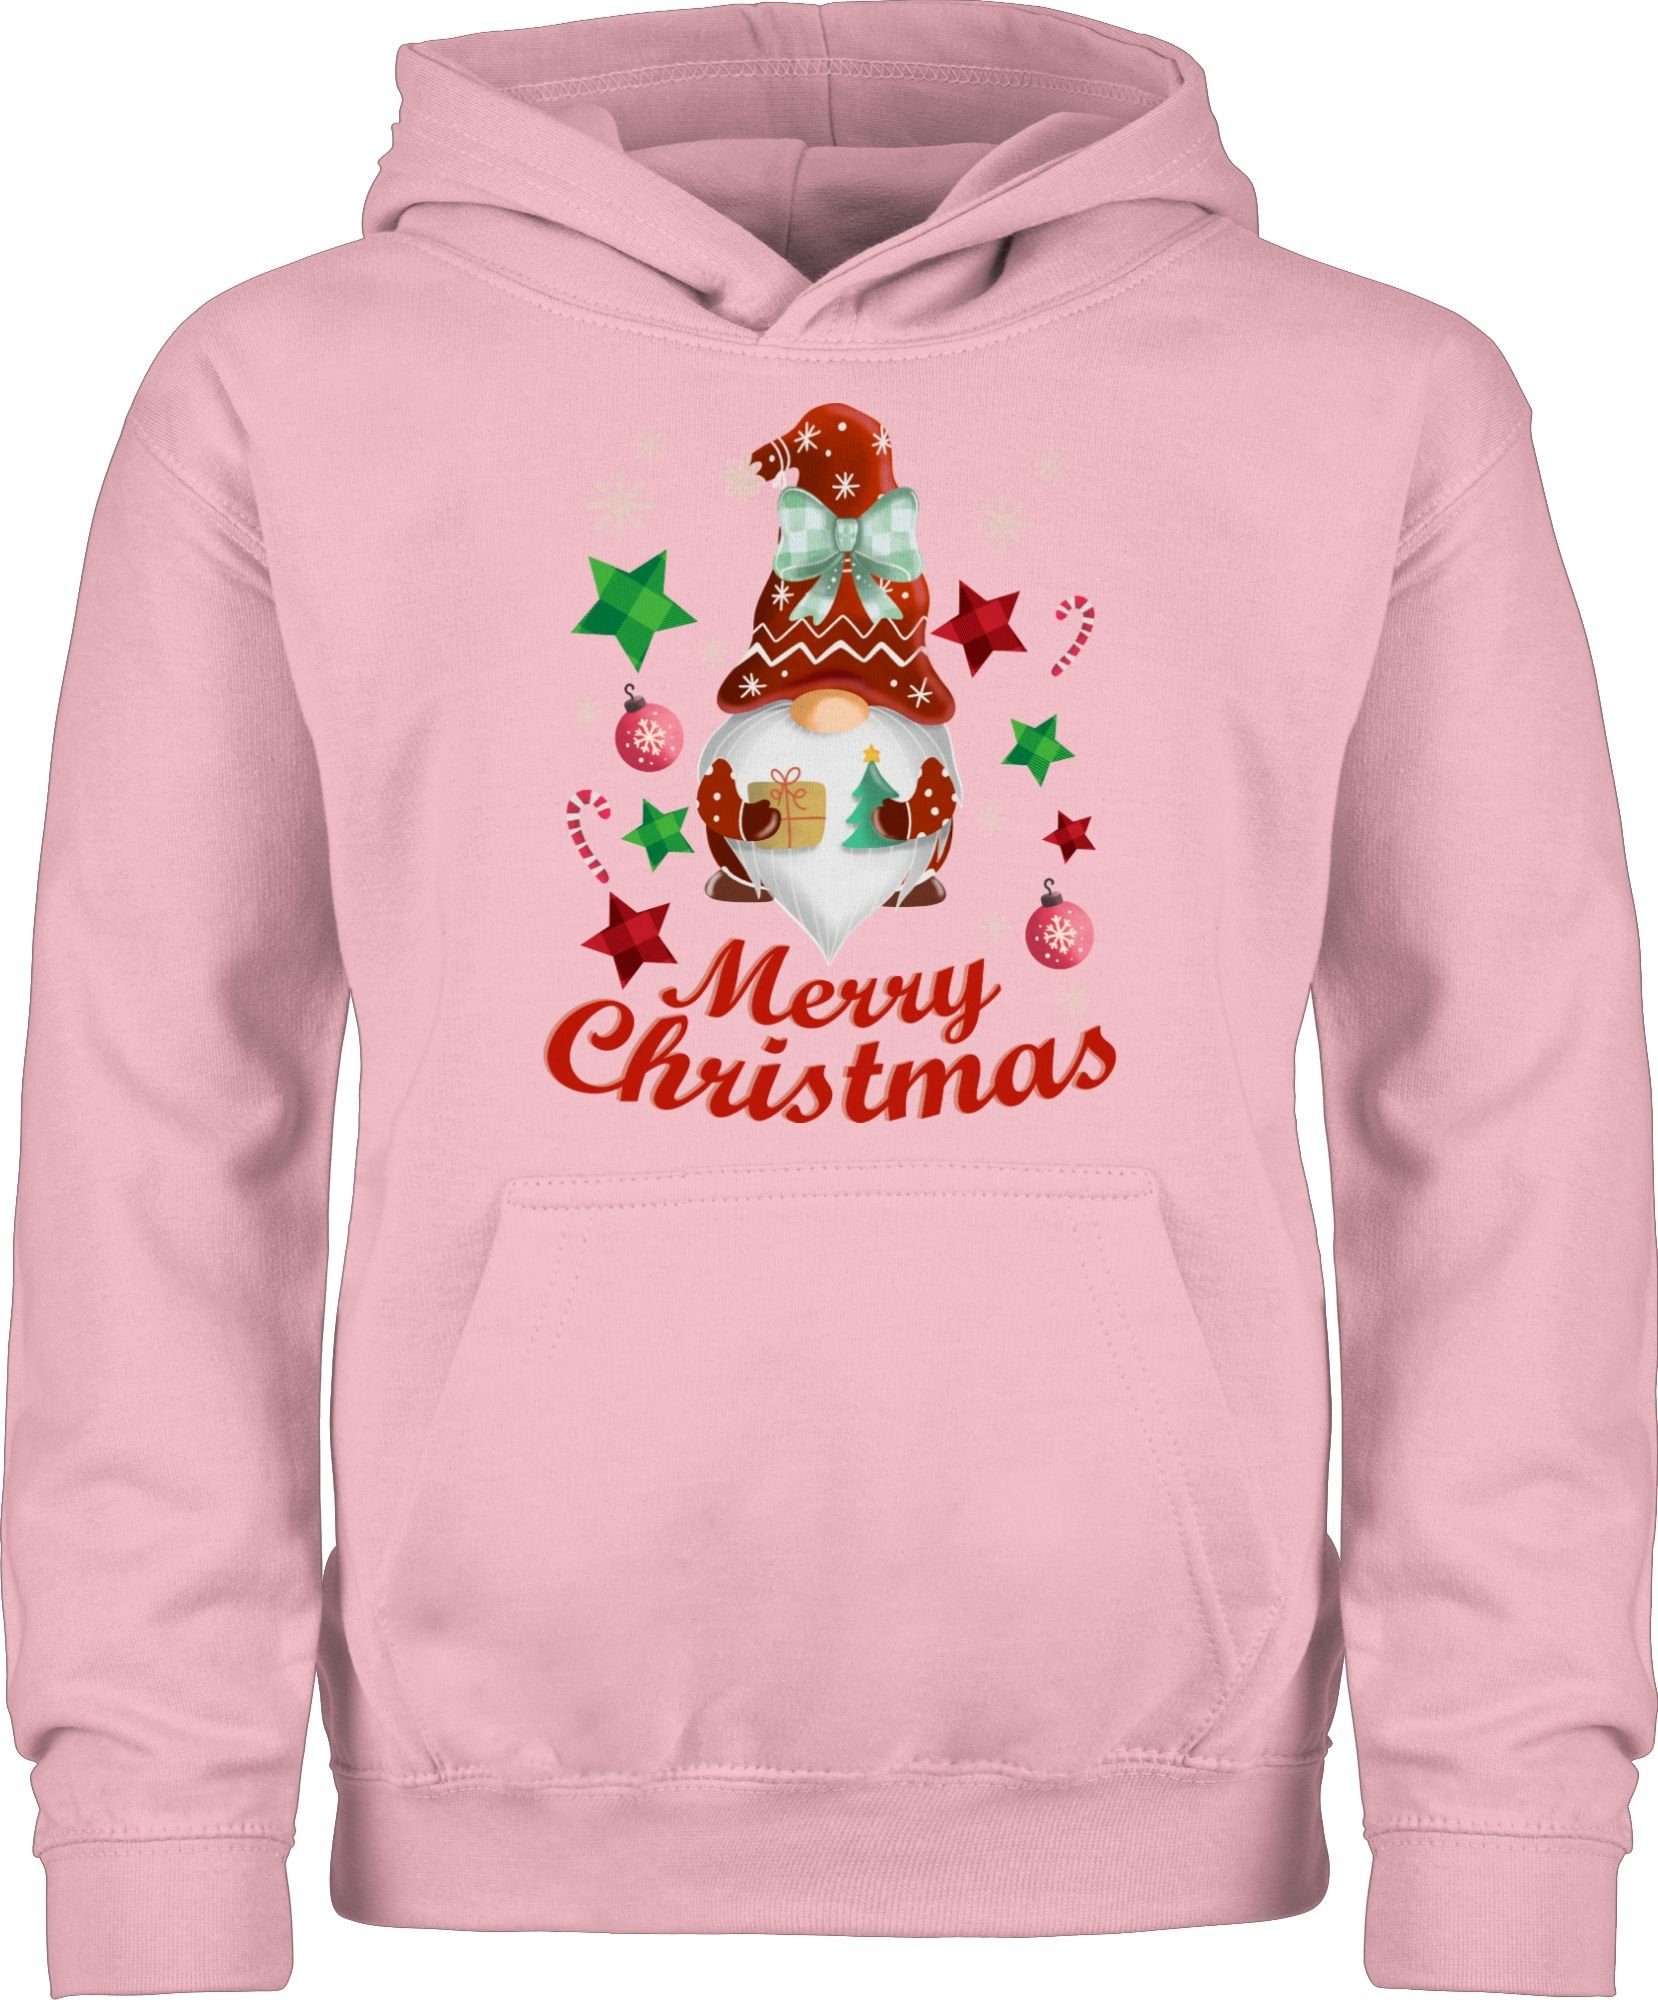 Sehr empfehlenswert Shirtracer Hoodie Weihnachtlicher Wichtel Kleidung Hellrosa 1 Weihnachten Kinder